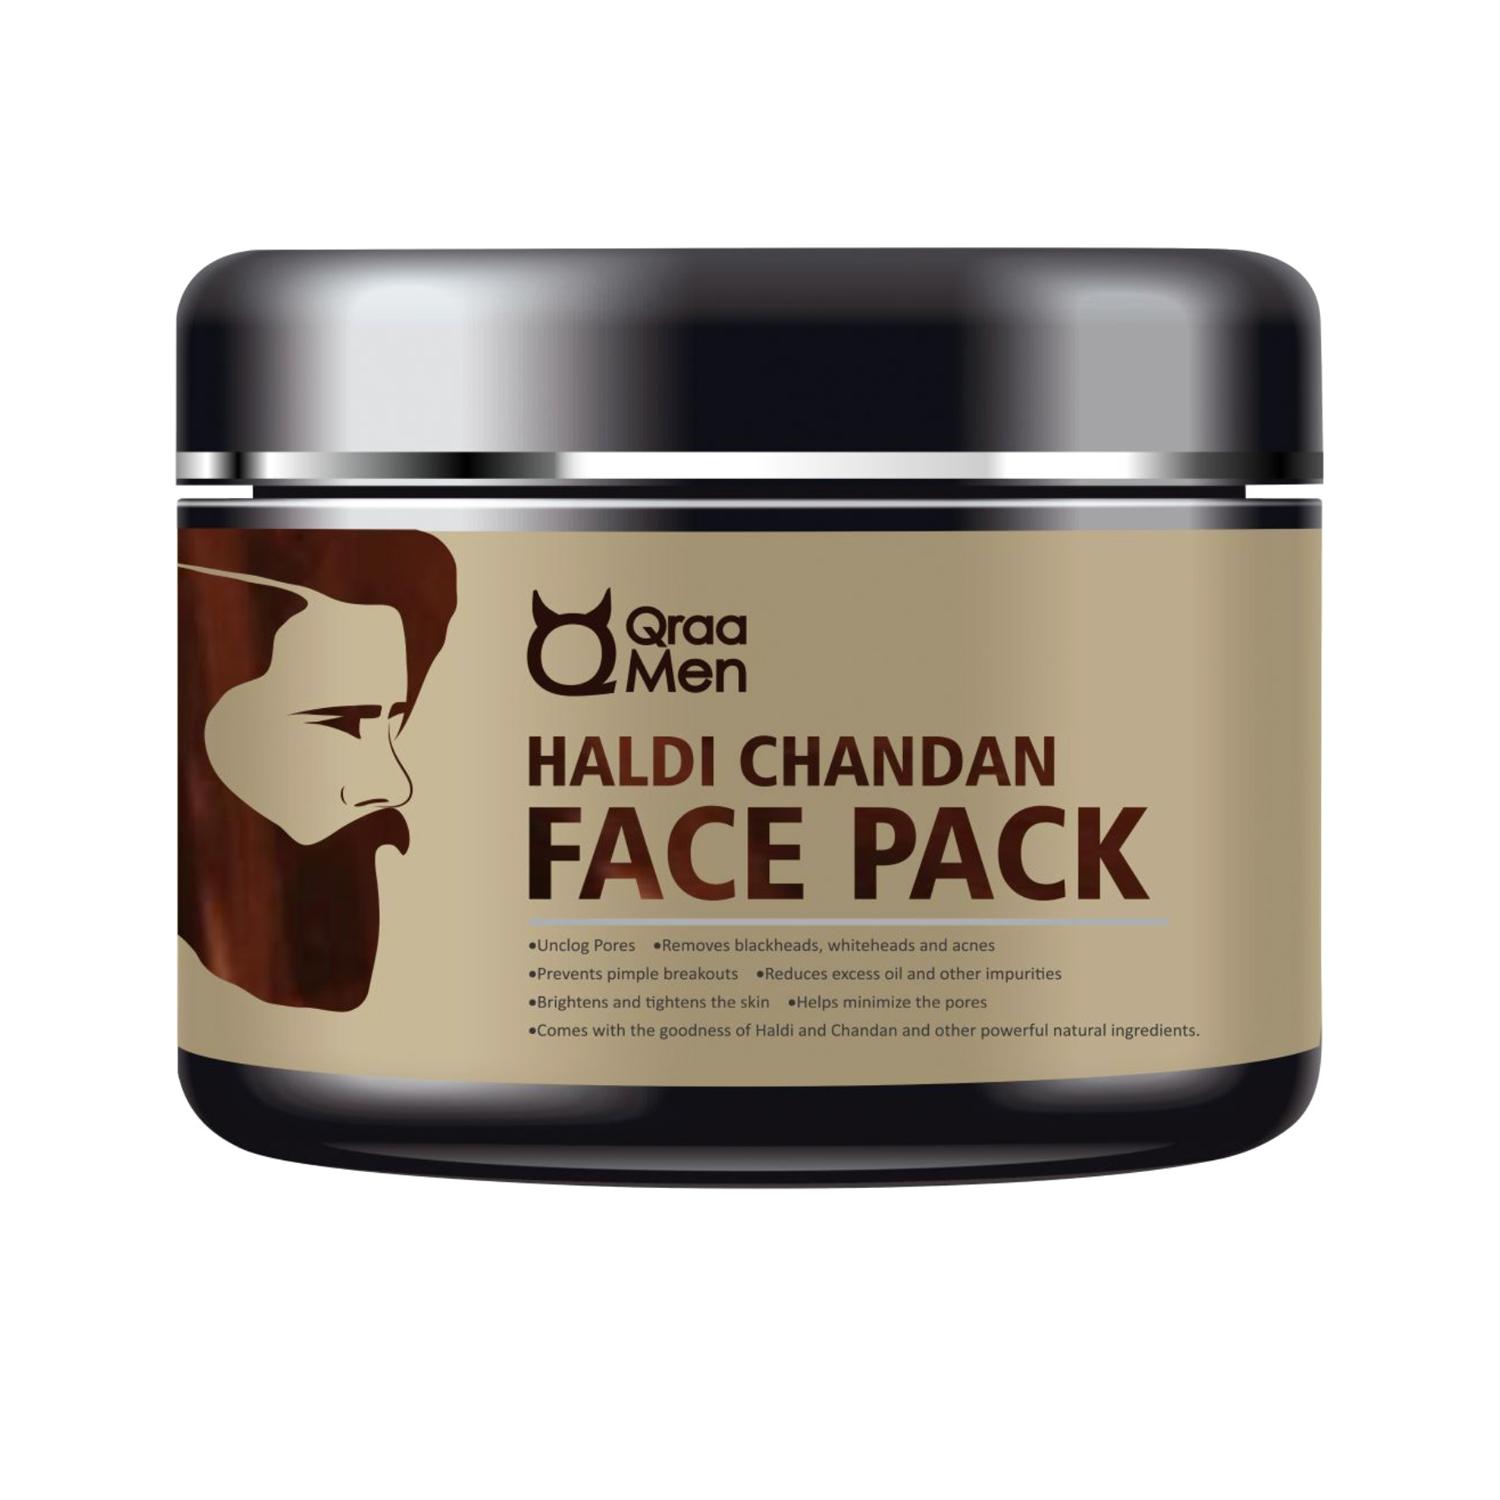 Qraamen | Qraamen Men Haldi Chandan Face Pack (120 g)